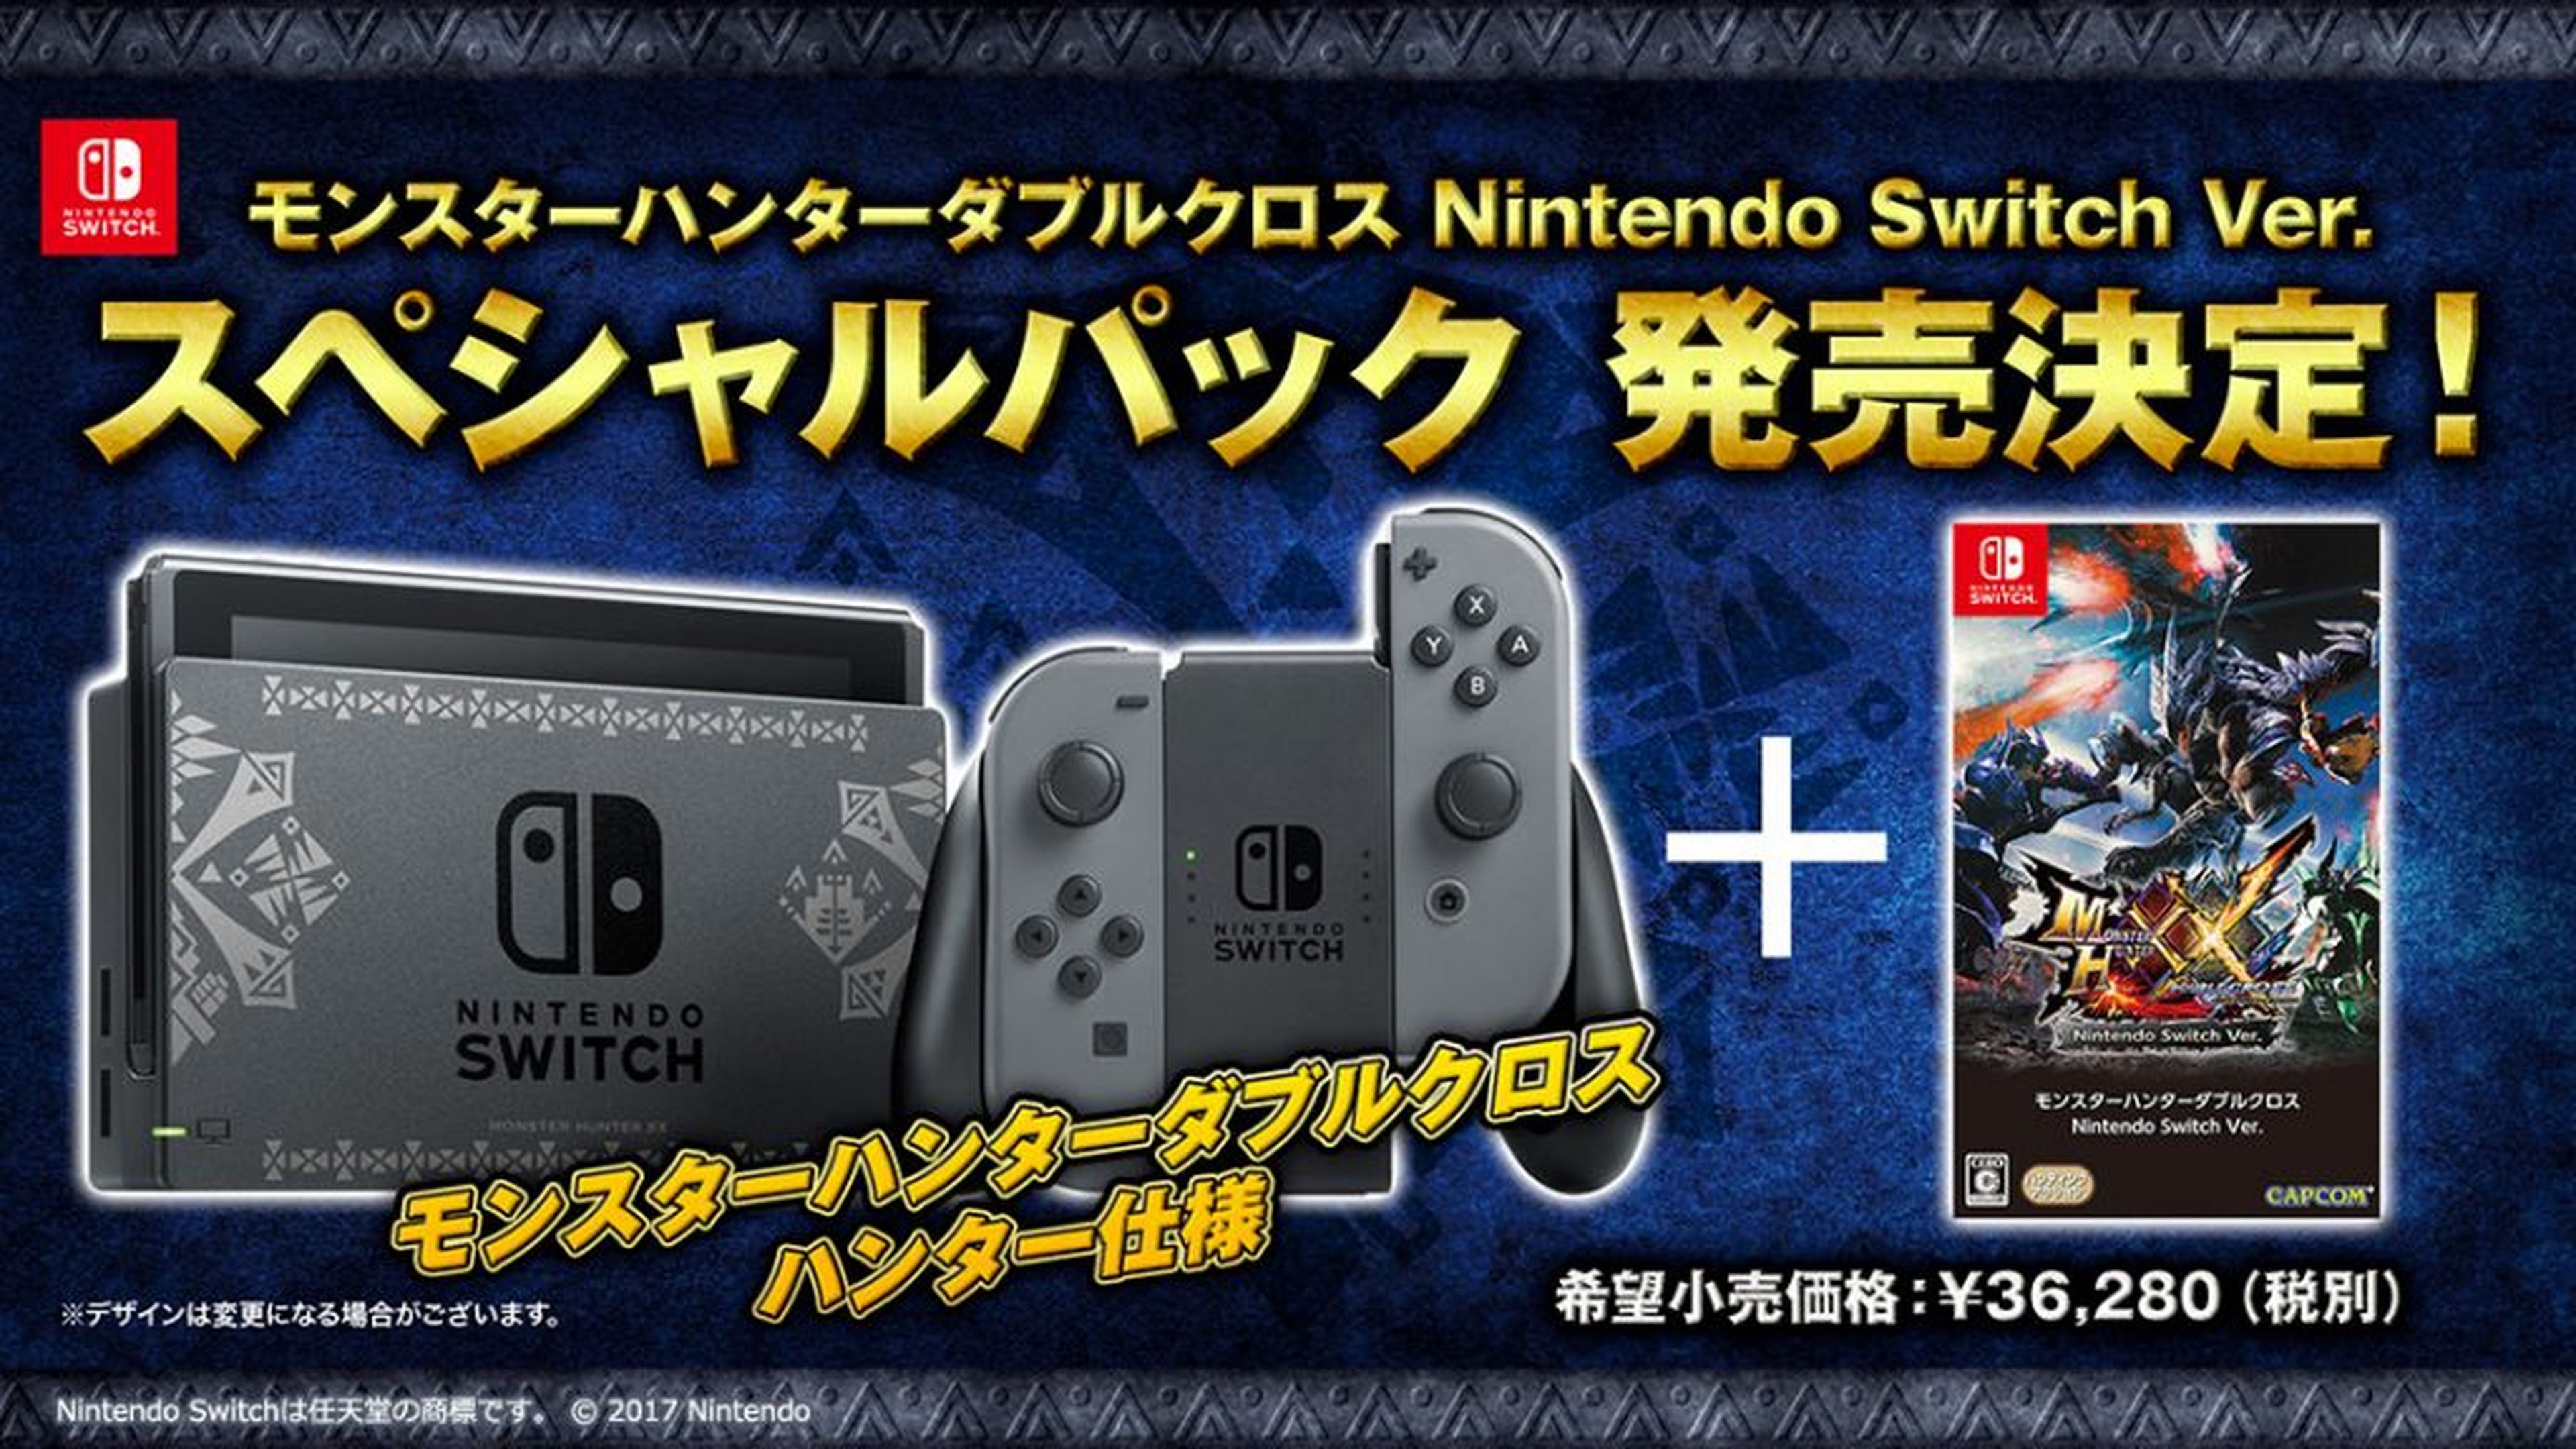 Monster Hunter XX Nintendo Switch Ver. Pack